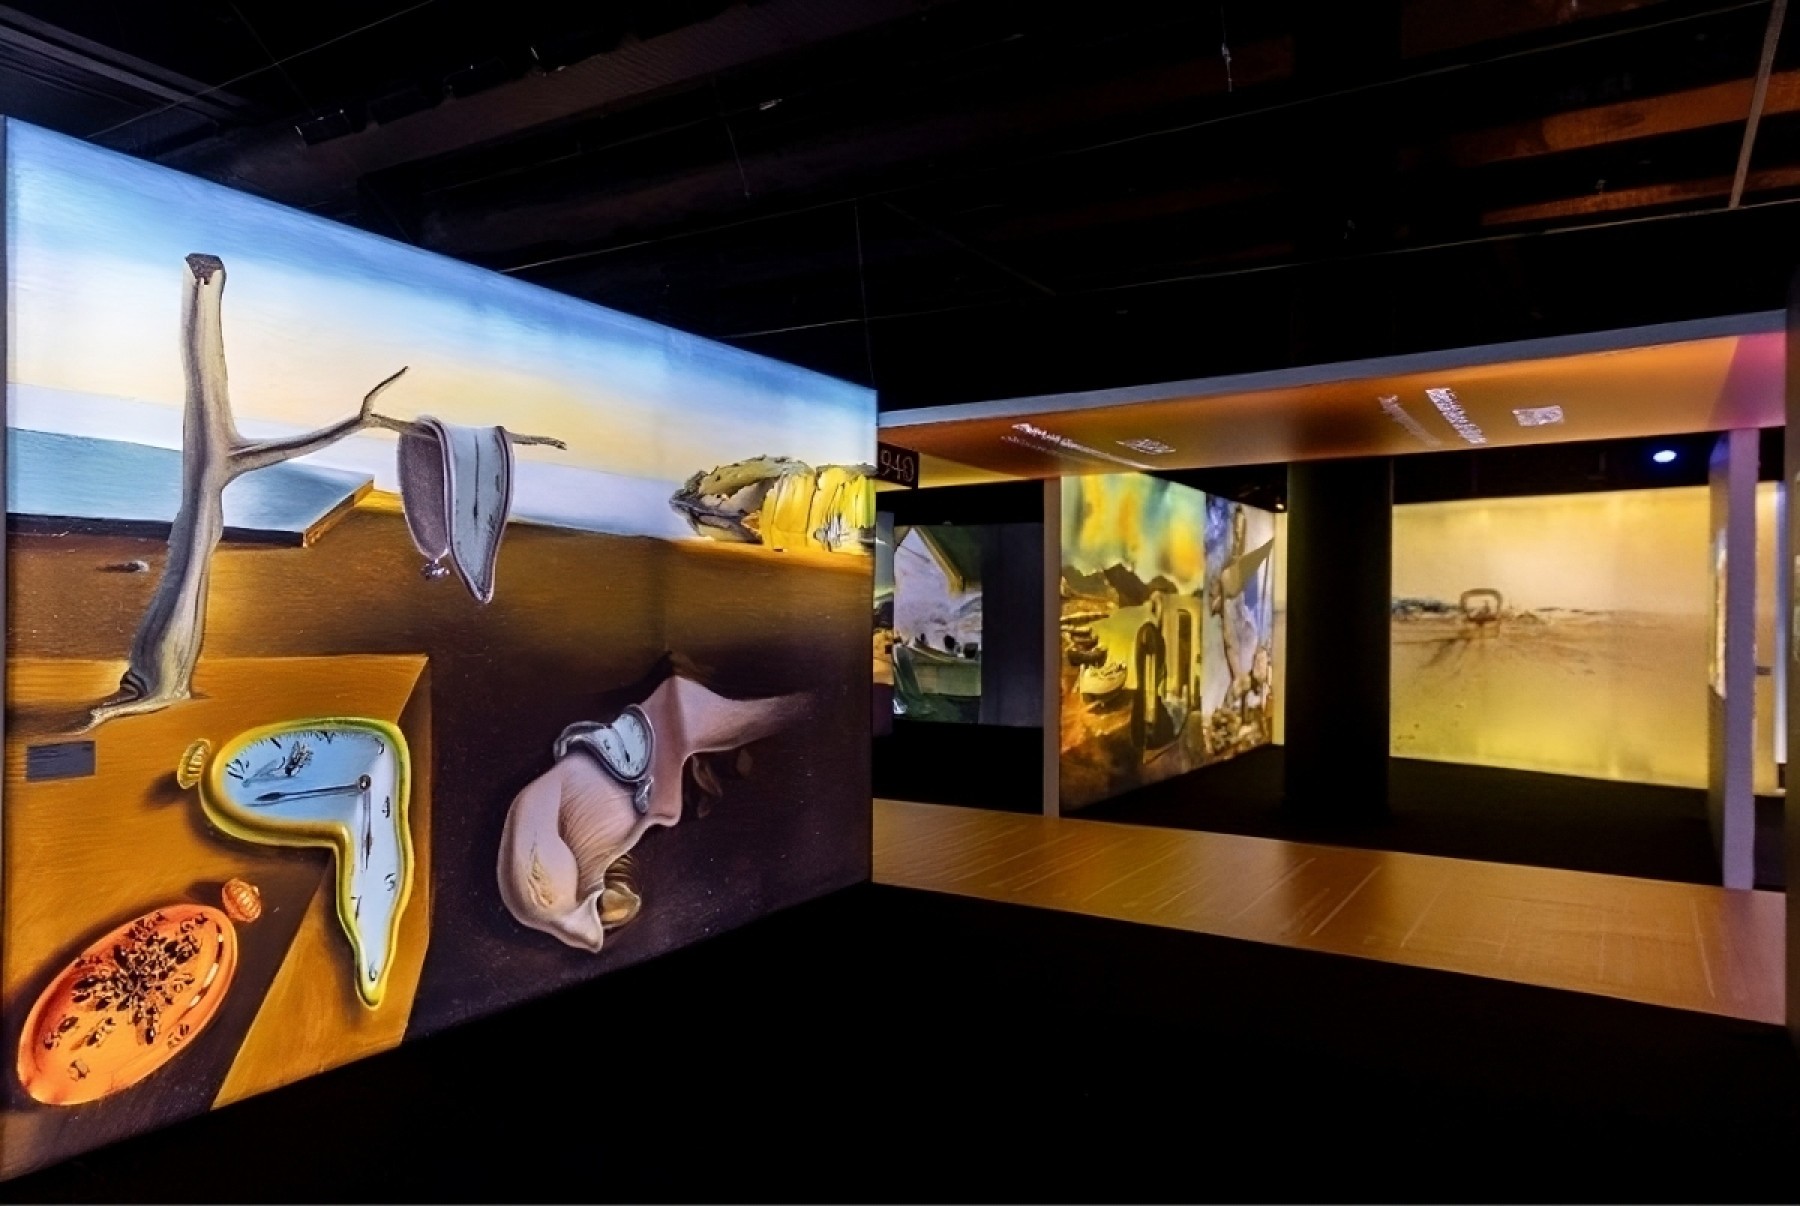 Exposição Desafio Salvador Dalí, em São Paulo, é prorrogada até 01 de setembro